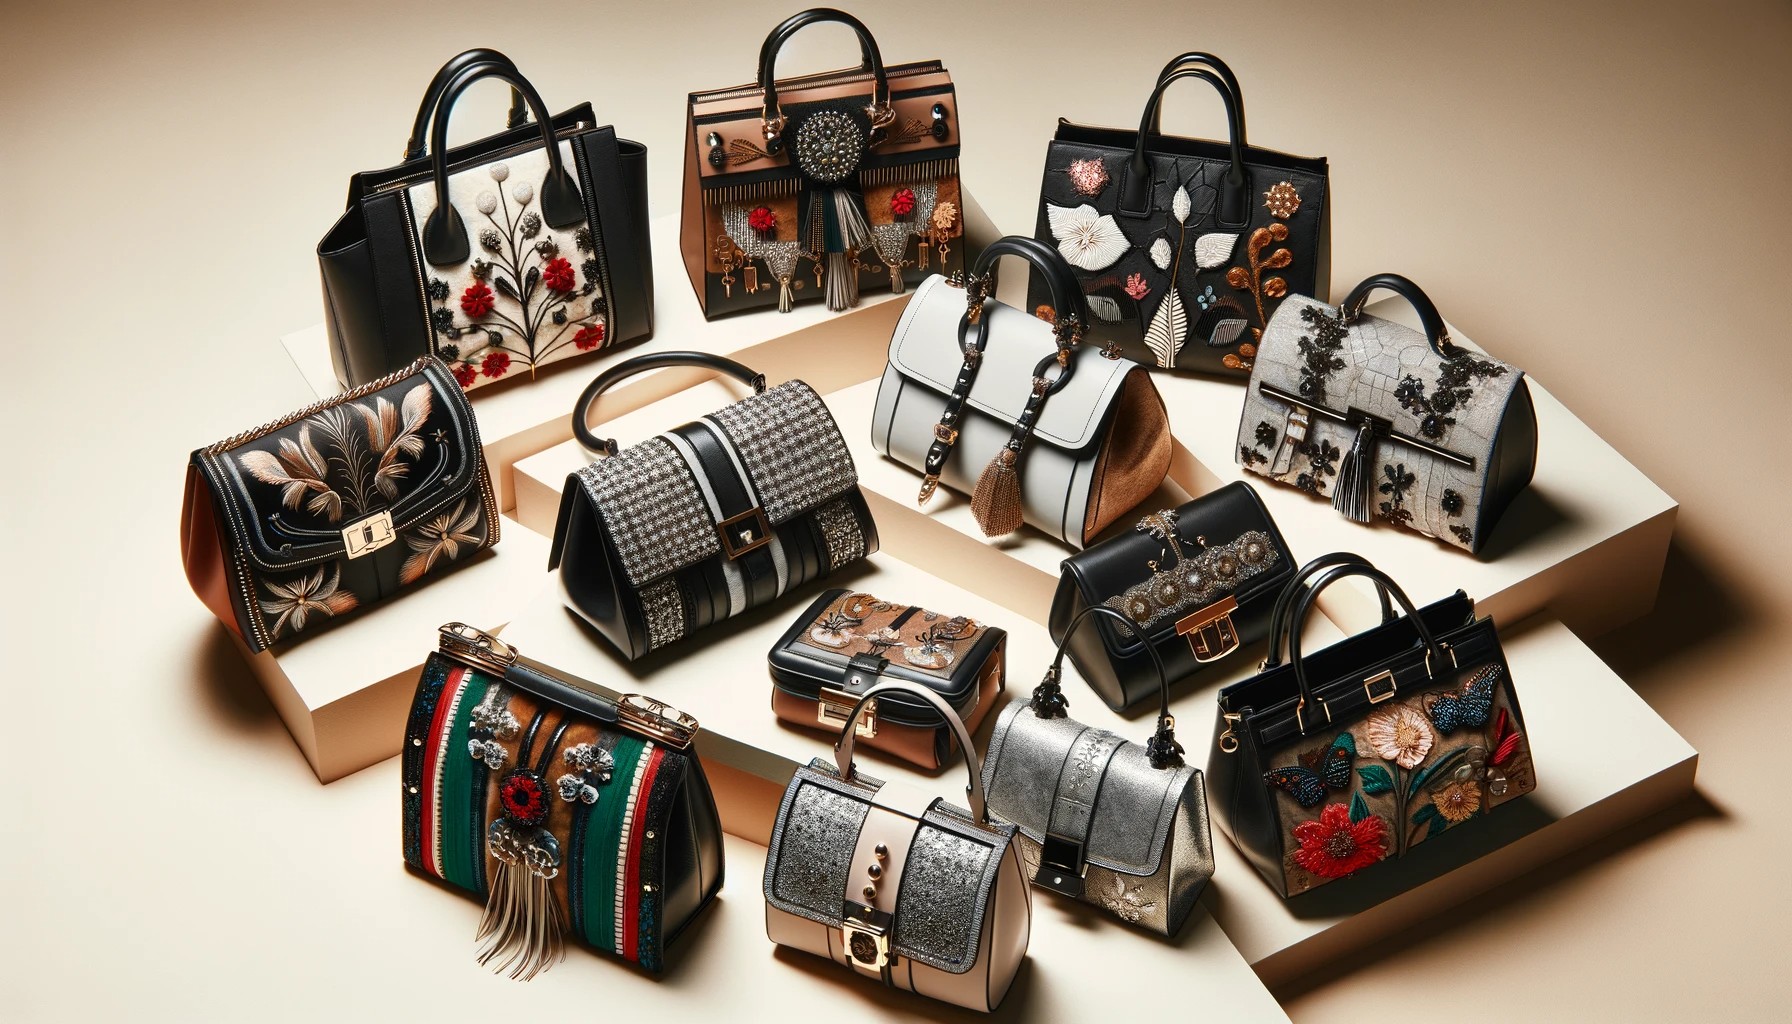 Le borse: un accessorio di stile e comodità tra le donne